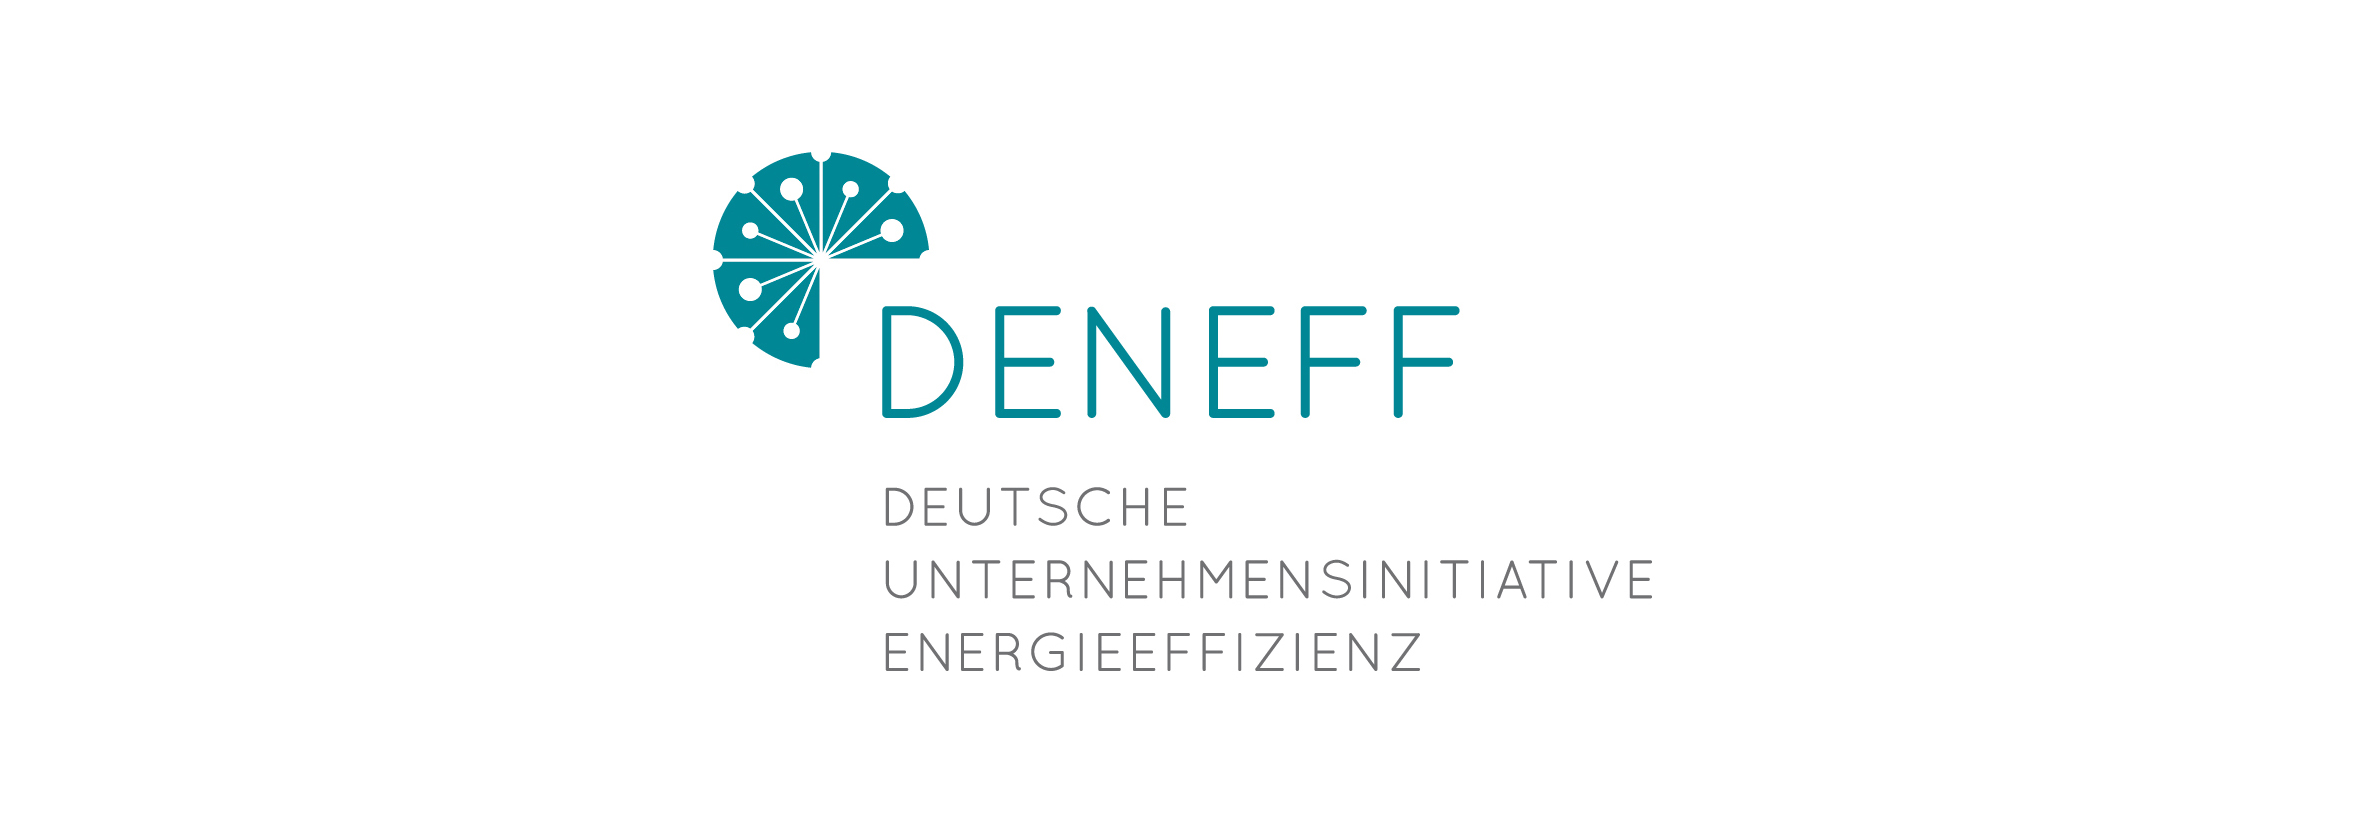 deneff logo